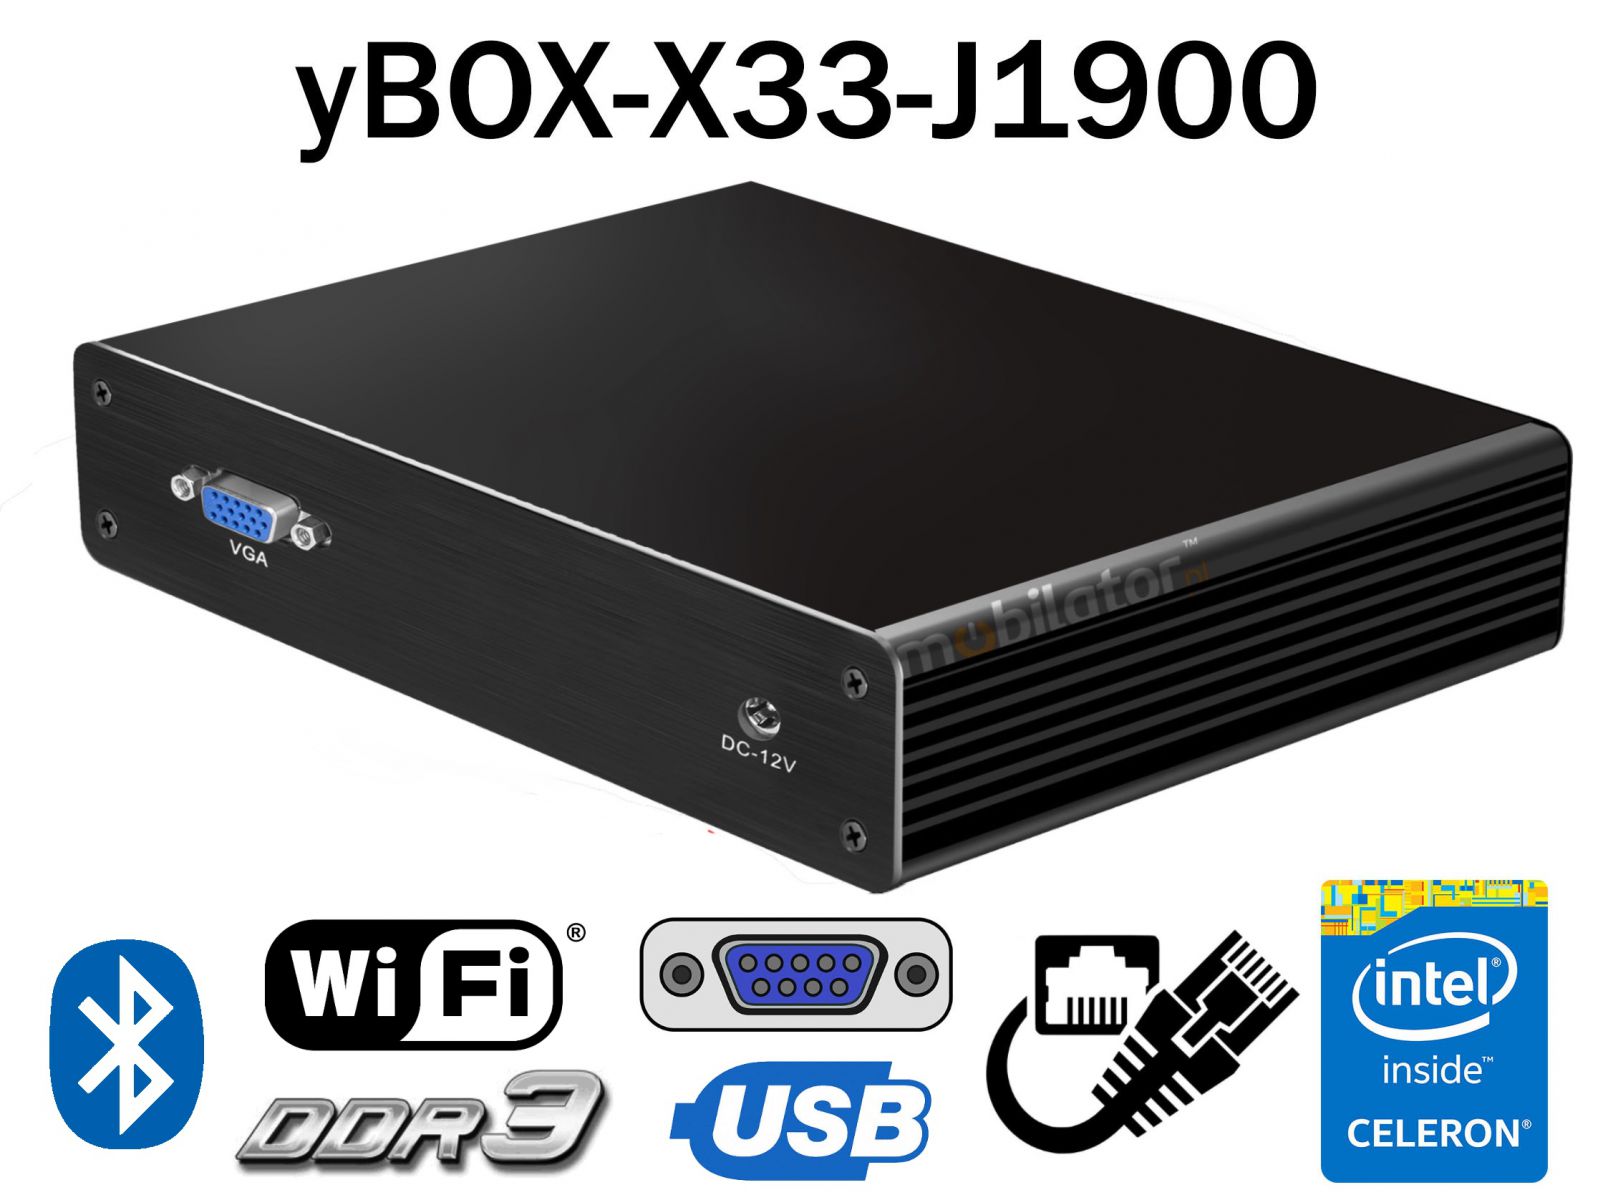 Przemysowy komputer 6xLAN miniPC ze wzmocnion obudow, 4GB RAM, 64GB SSD yBOX - X33 - (6xLAN) - J1900